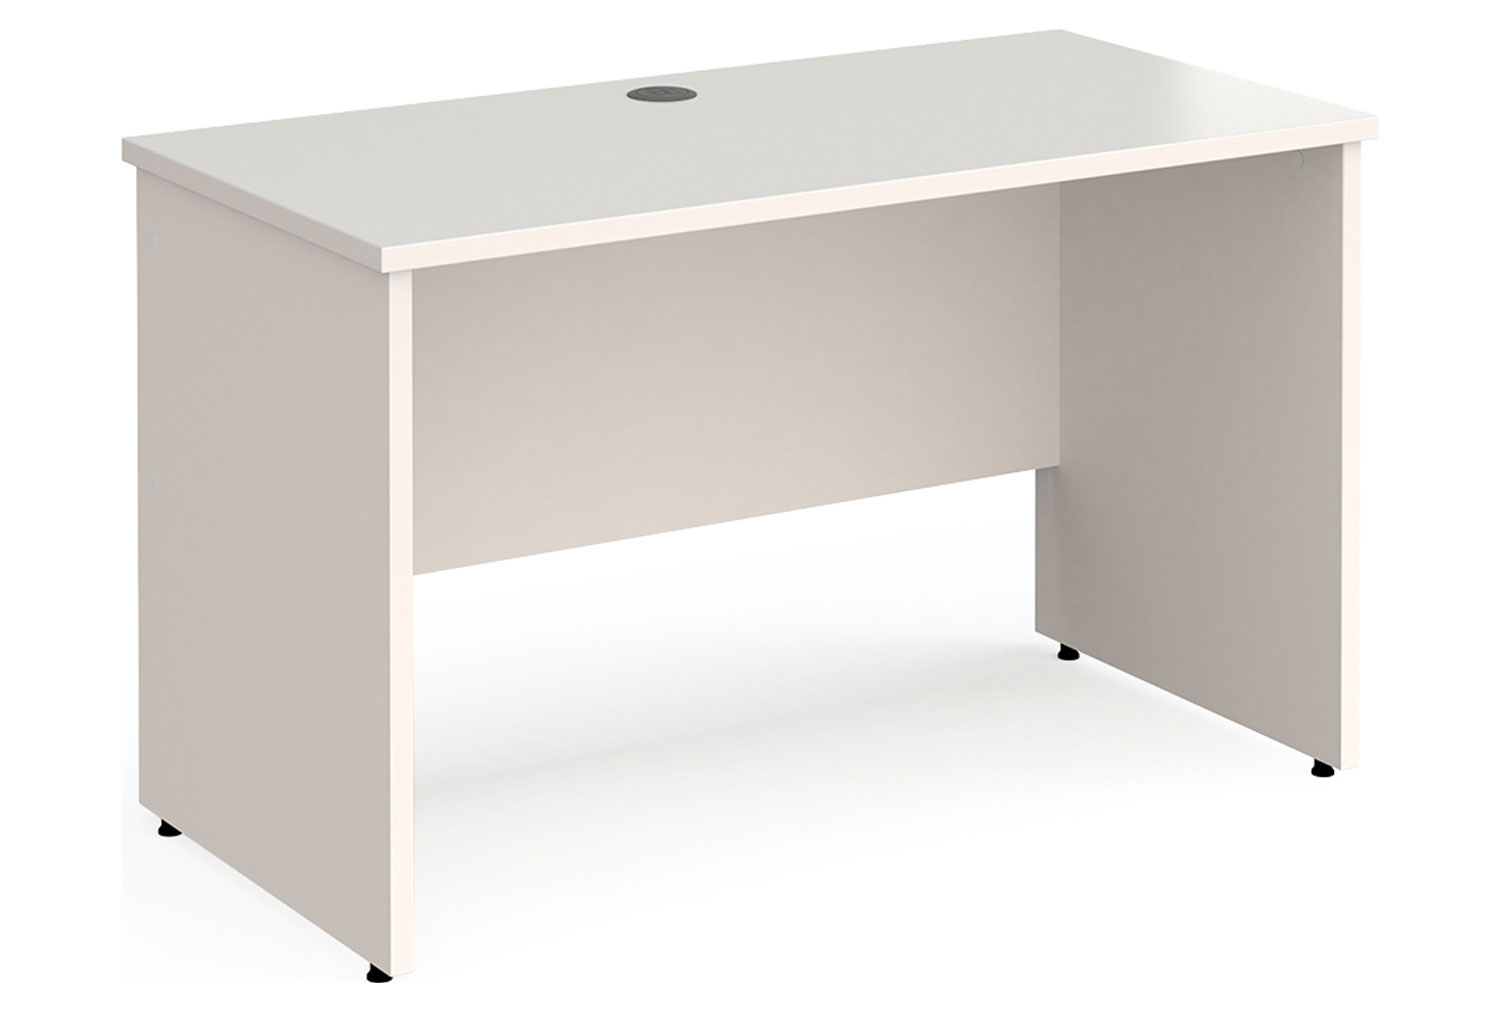 All White Panel End Narrow Rectangular Office Desk, 120w60dx73h (cm), Fully Installed